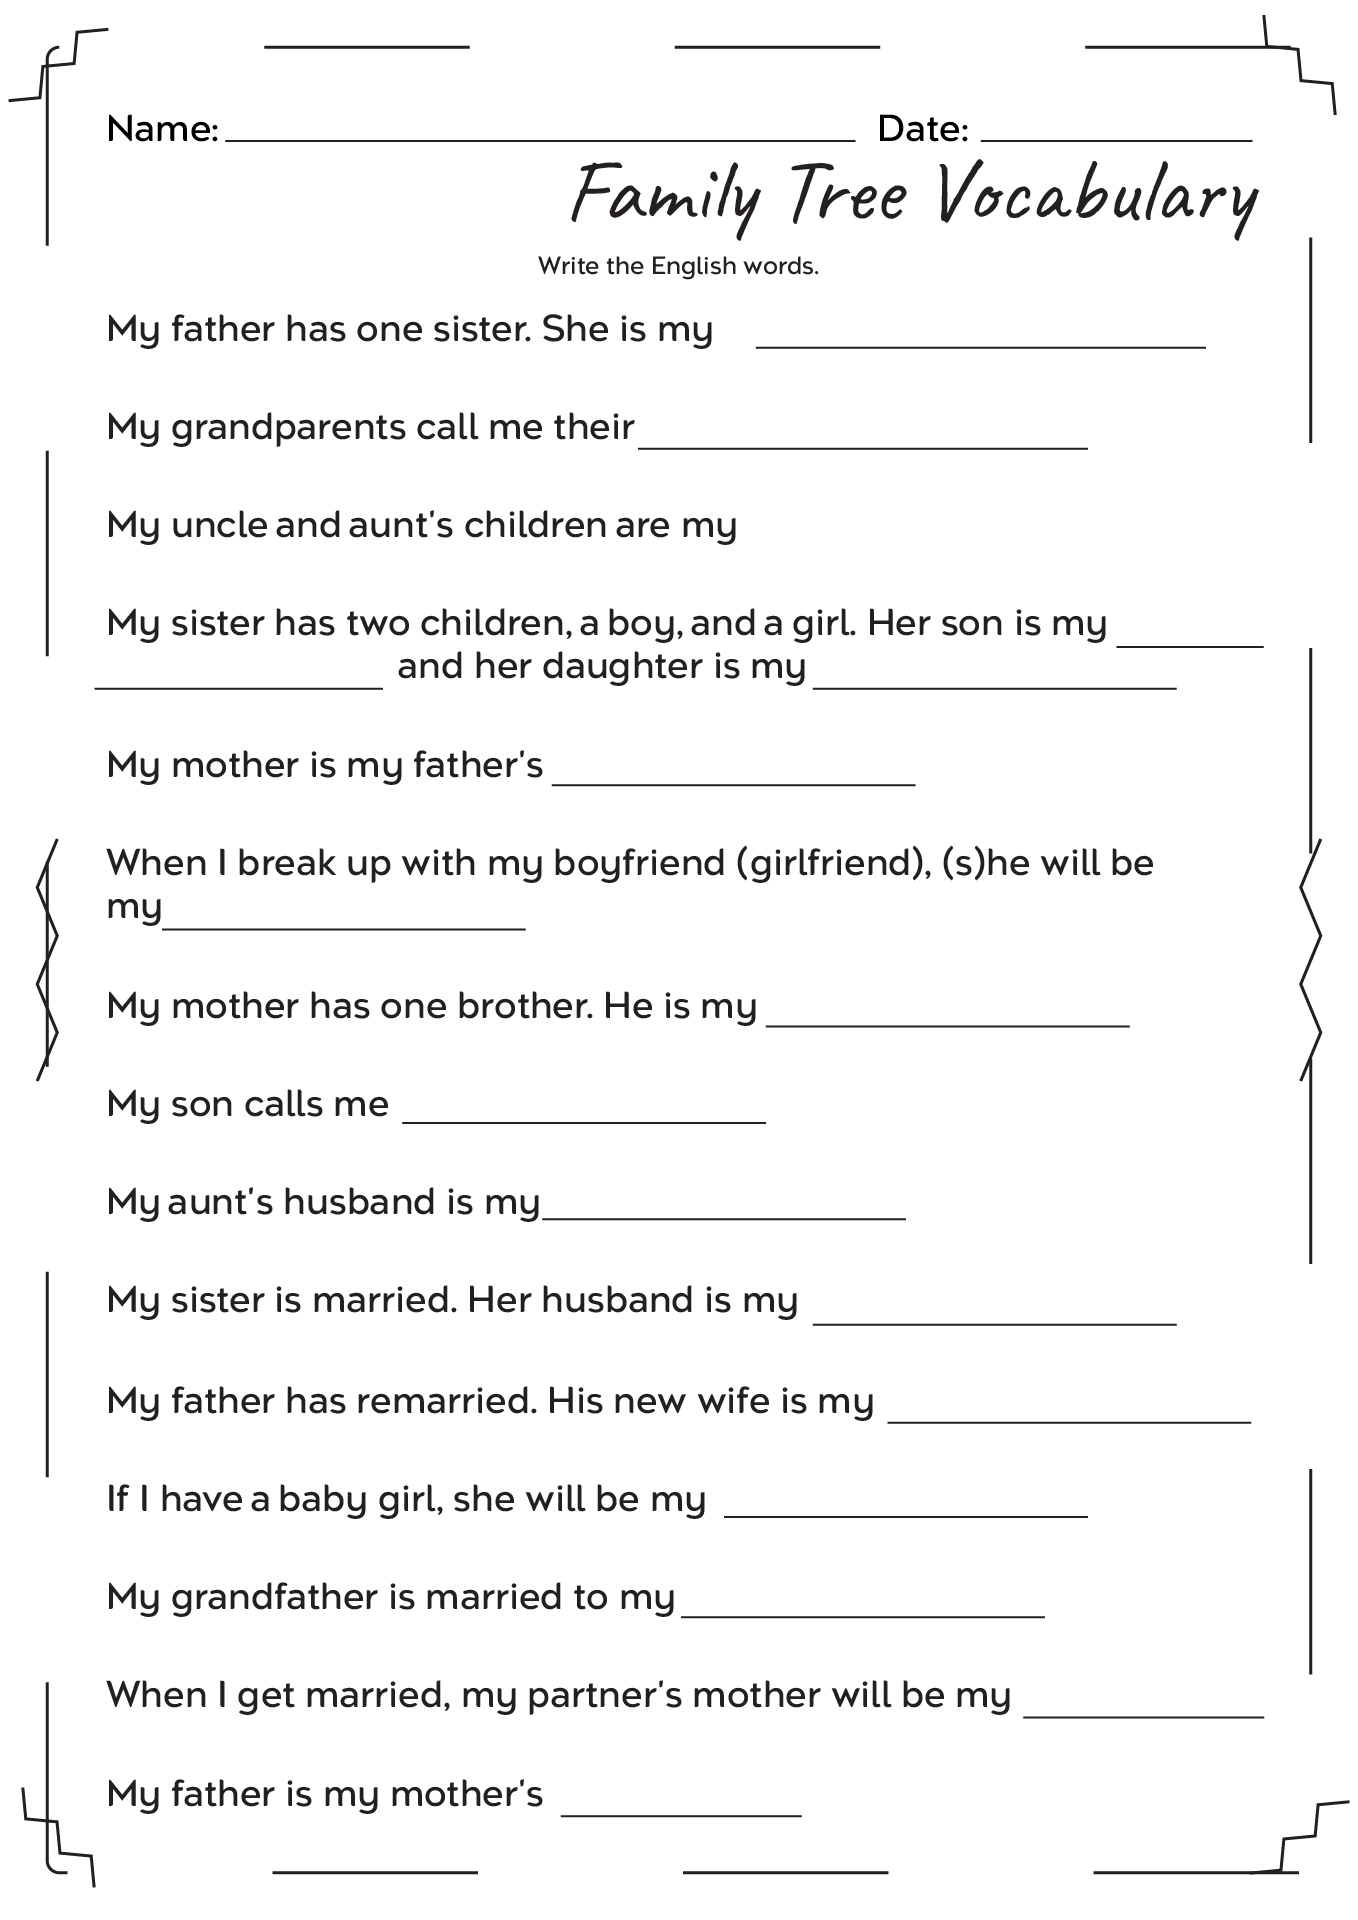 Family Tree Vocabulary Worksheets